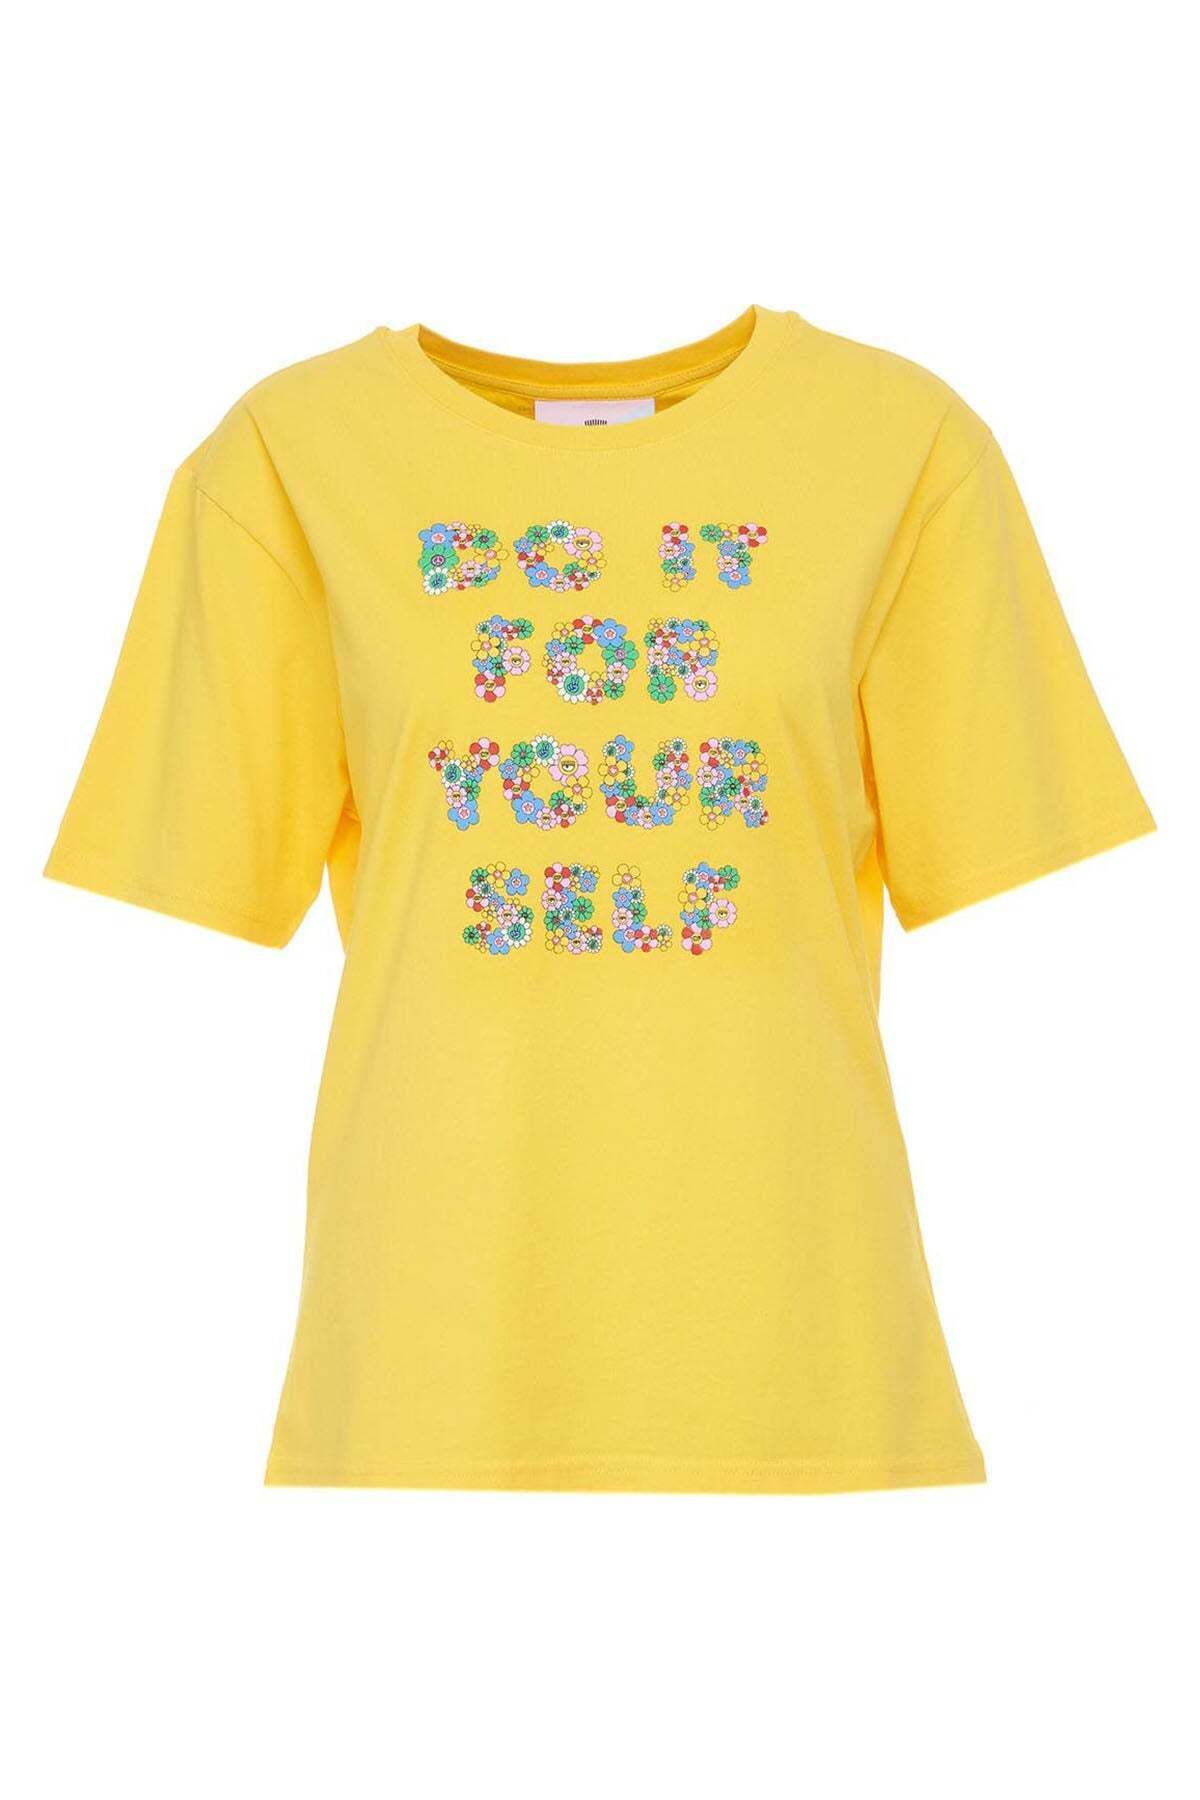 CHIARA FERRAGNI Yuvarlak Yaka Yazılı T-shirt M / Sarı